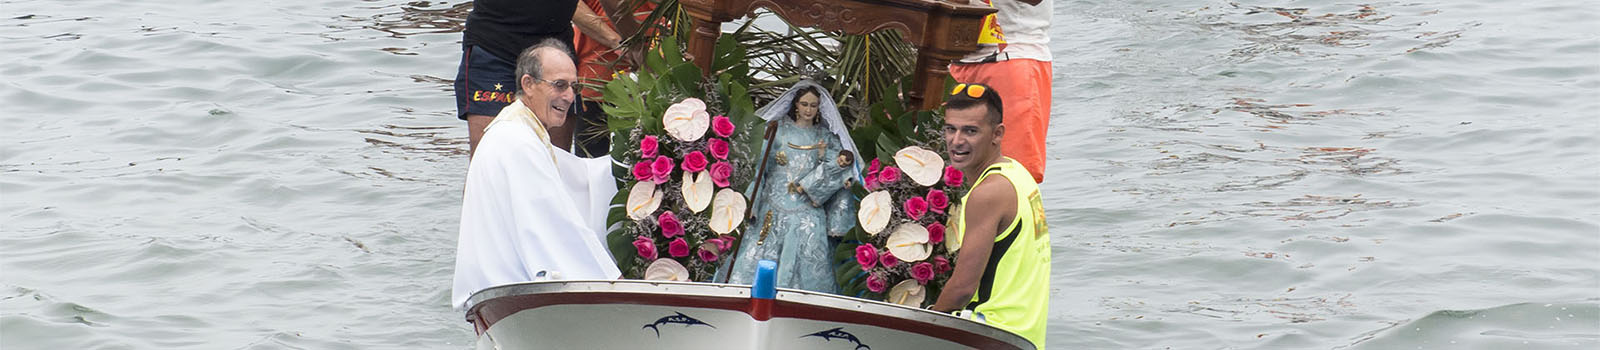 Traditionen auf Fuerteventura – ein lockeres Verhältnis zum Katholizismus.